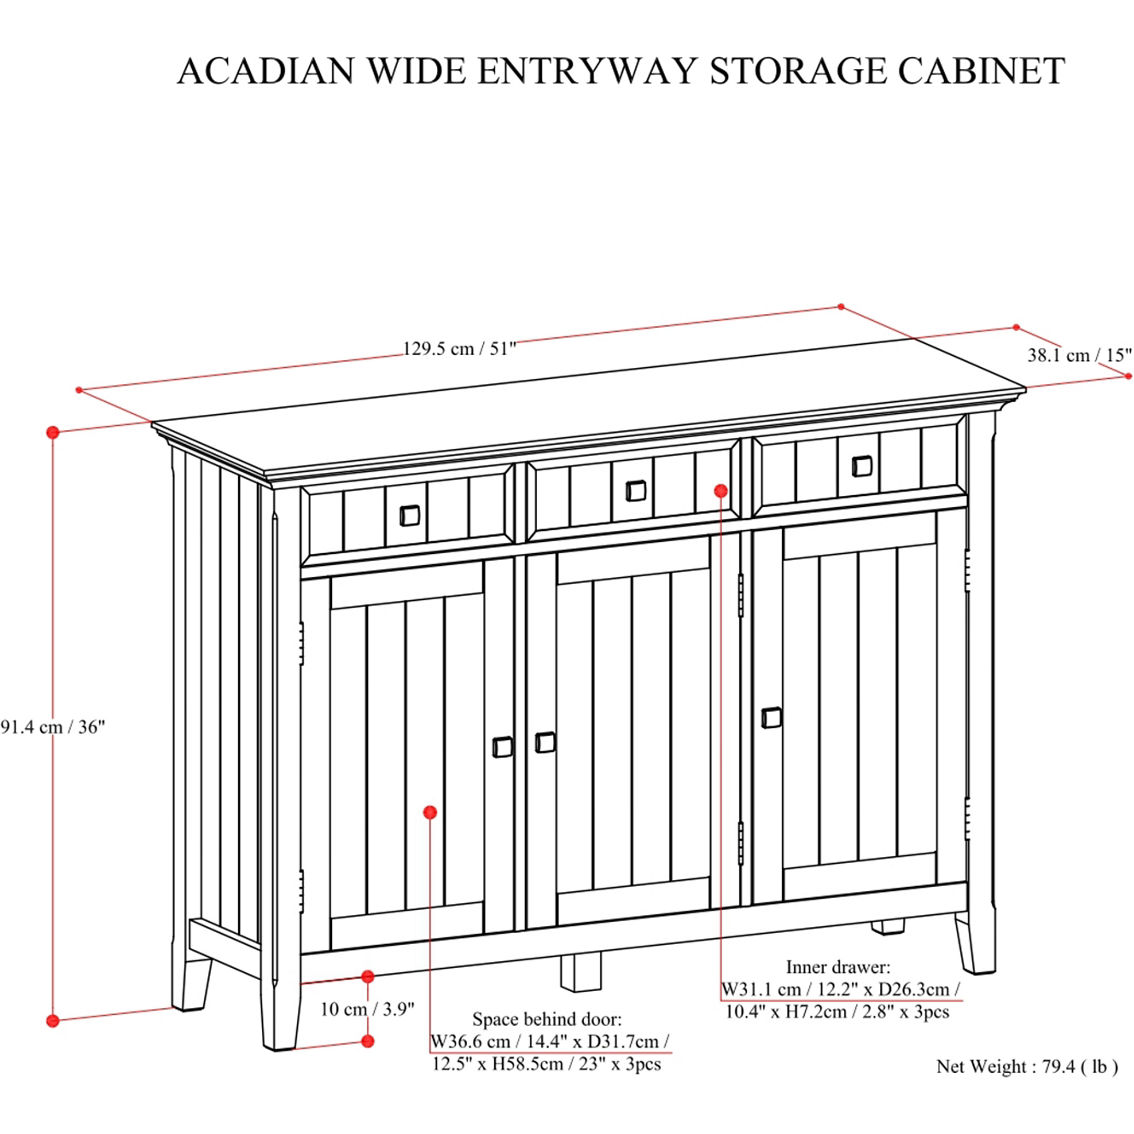 Simpli Home Acadian Solid Wood Wide Entryway Storage Cabinet in Brunette Brown - Image 5 of 5